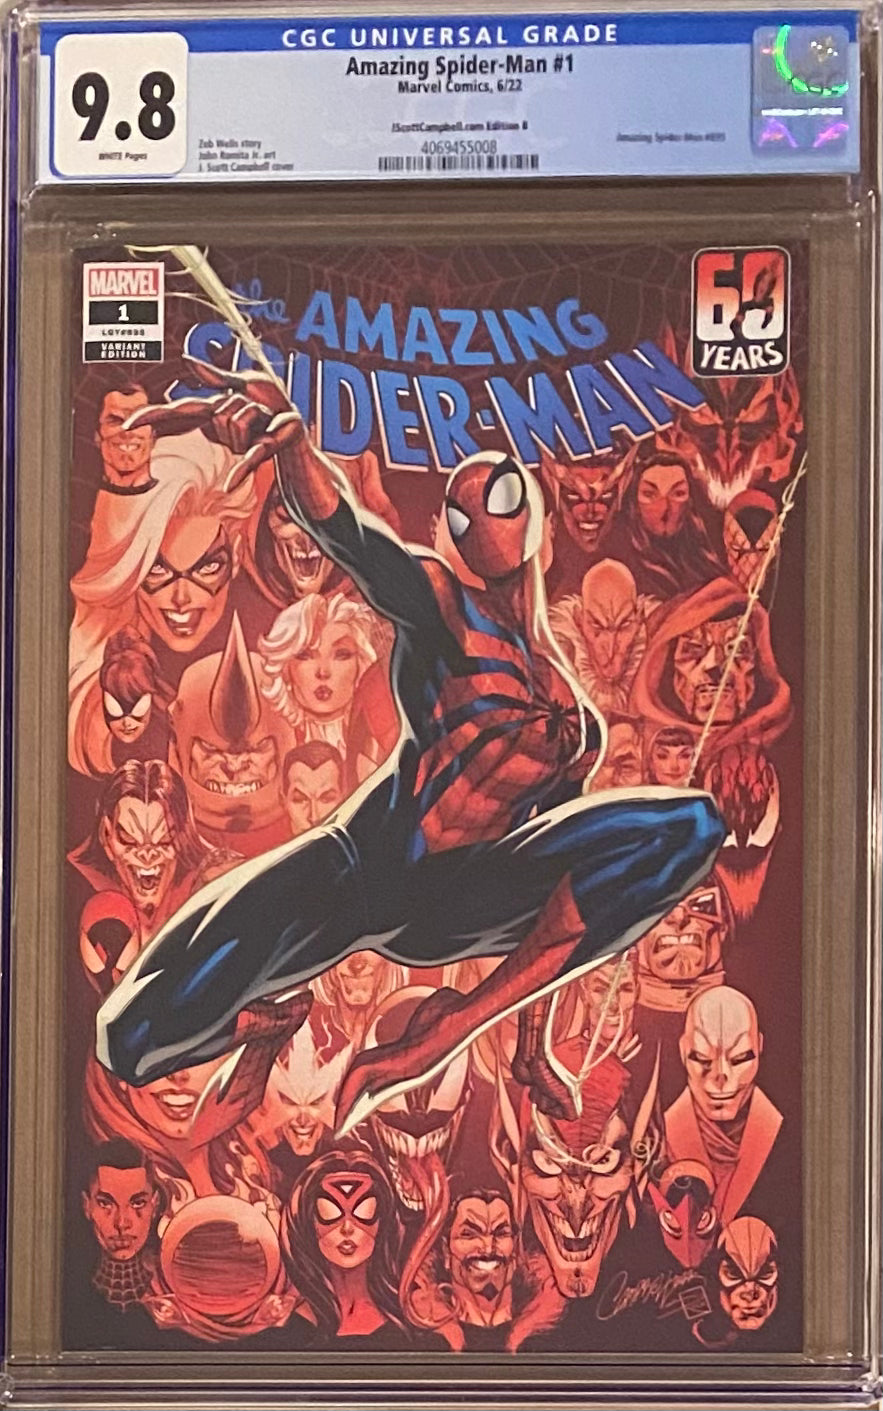 Amazing Spider-Man #1 J. Scott Campbell Edition B "Ben Reilly" CGC 9.8